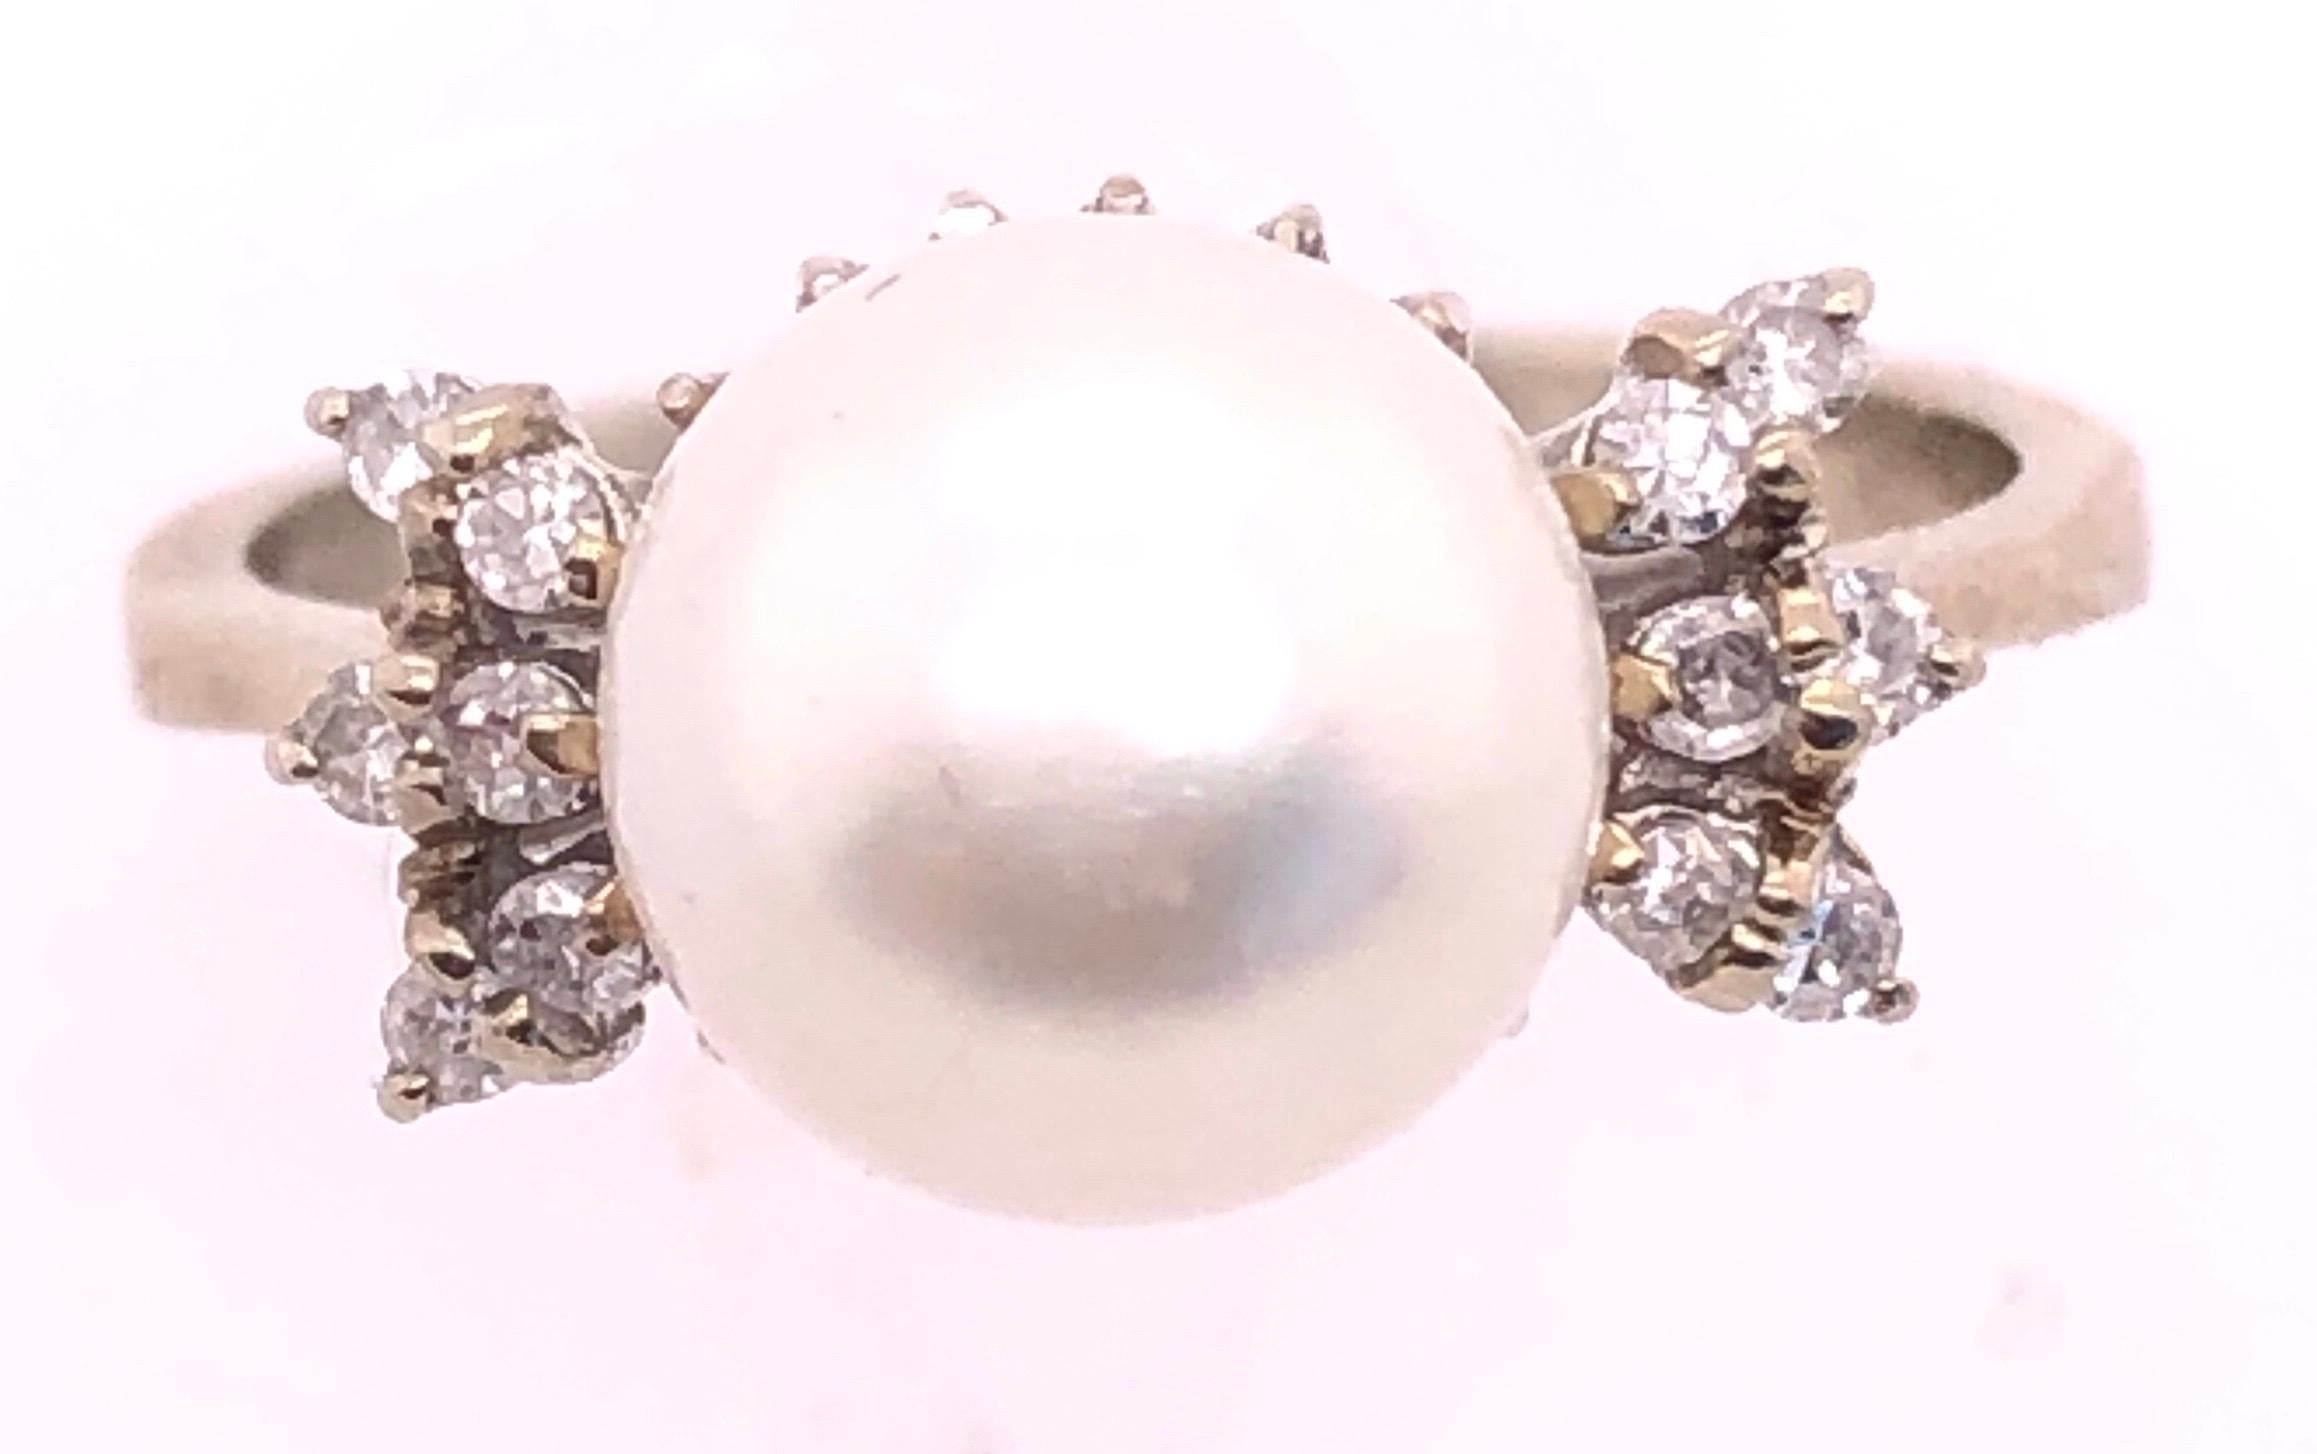 bague en or blanc 14 carats, solitaire en perles avec accents en diamants, taille 7.
0.12 poids total de diamants. 
perle de culture de 6 mm de diamètre
poids total de 4 grammes.